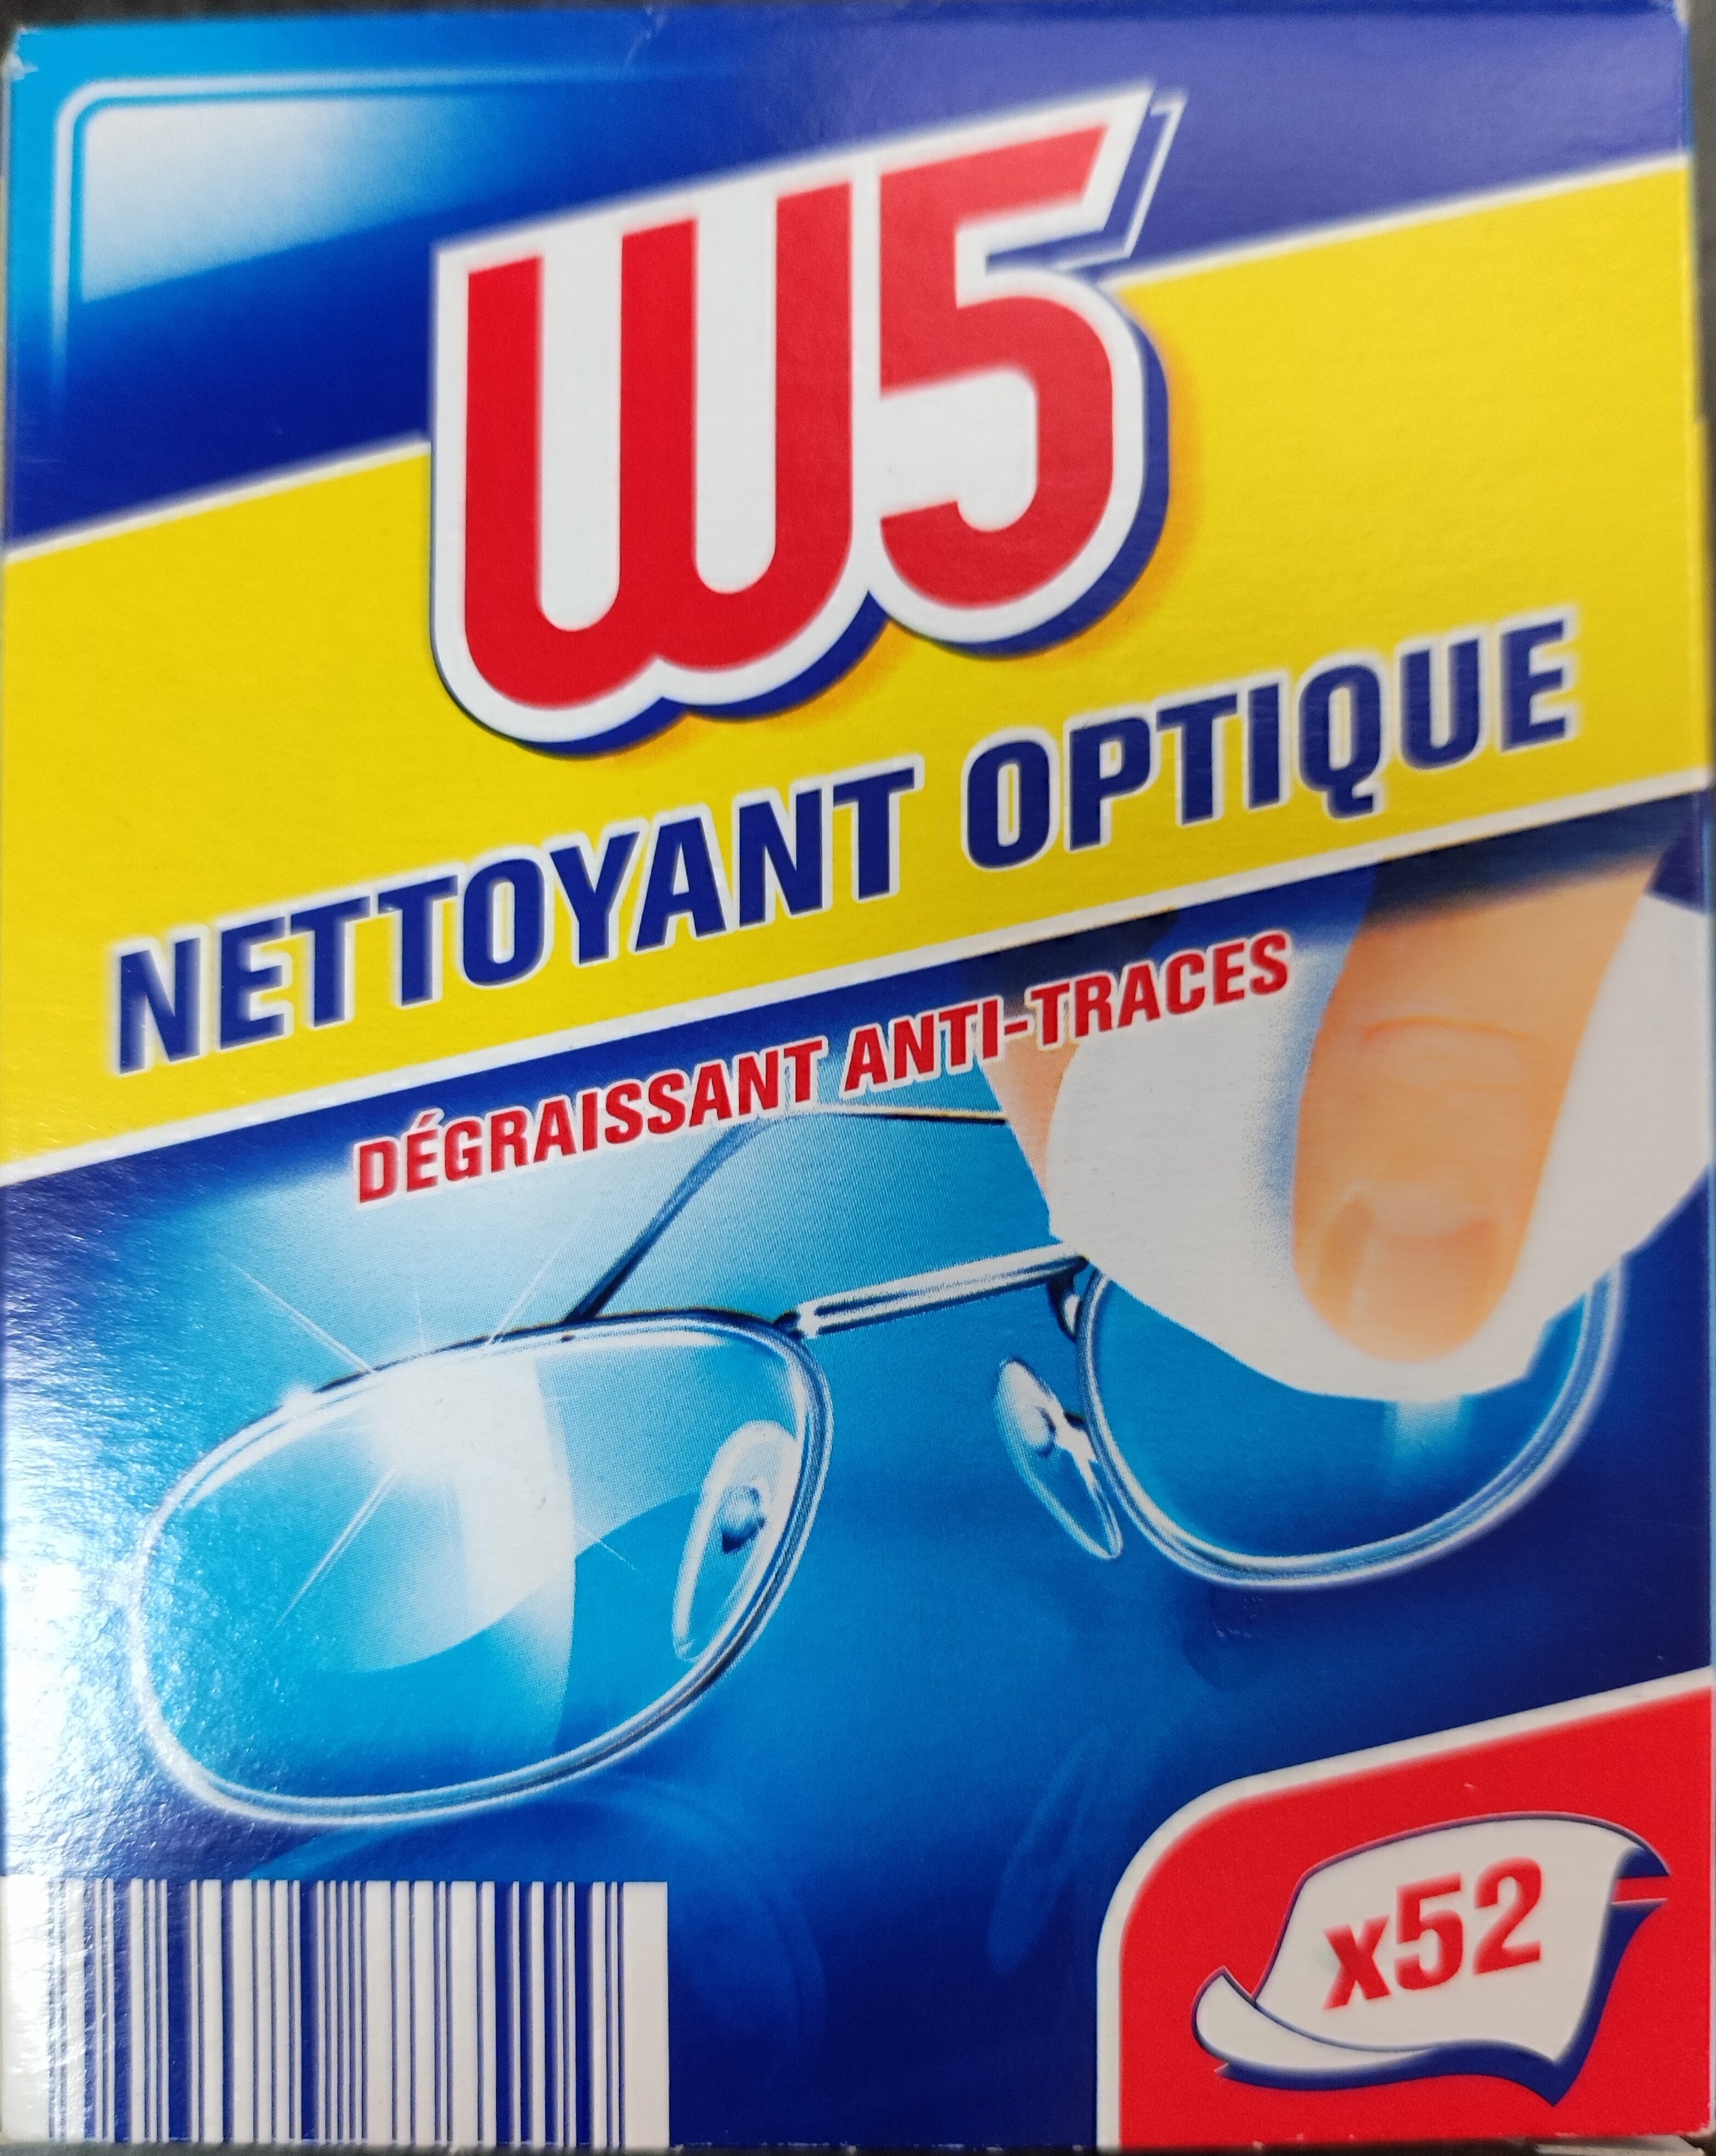 Nettoyant Optique - Produit - fr